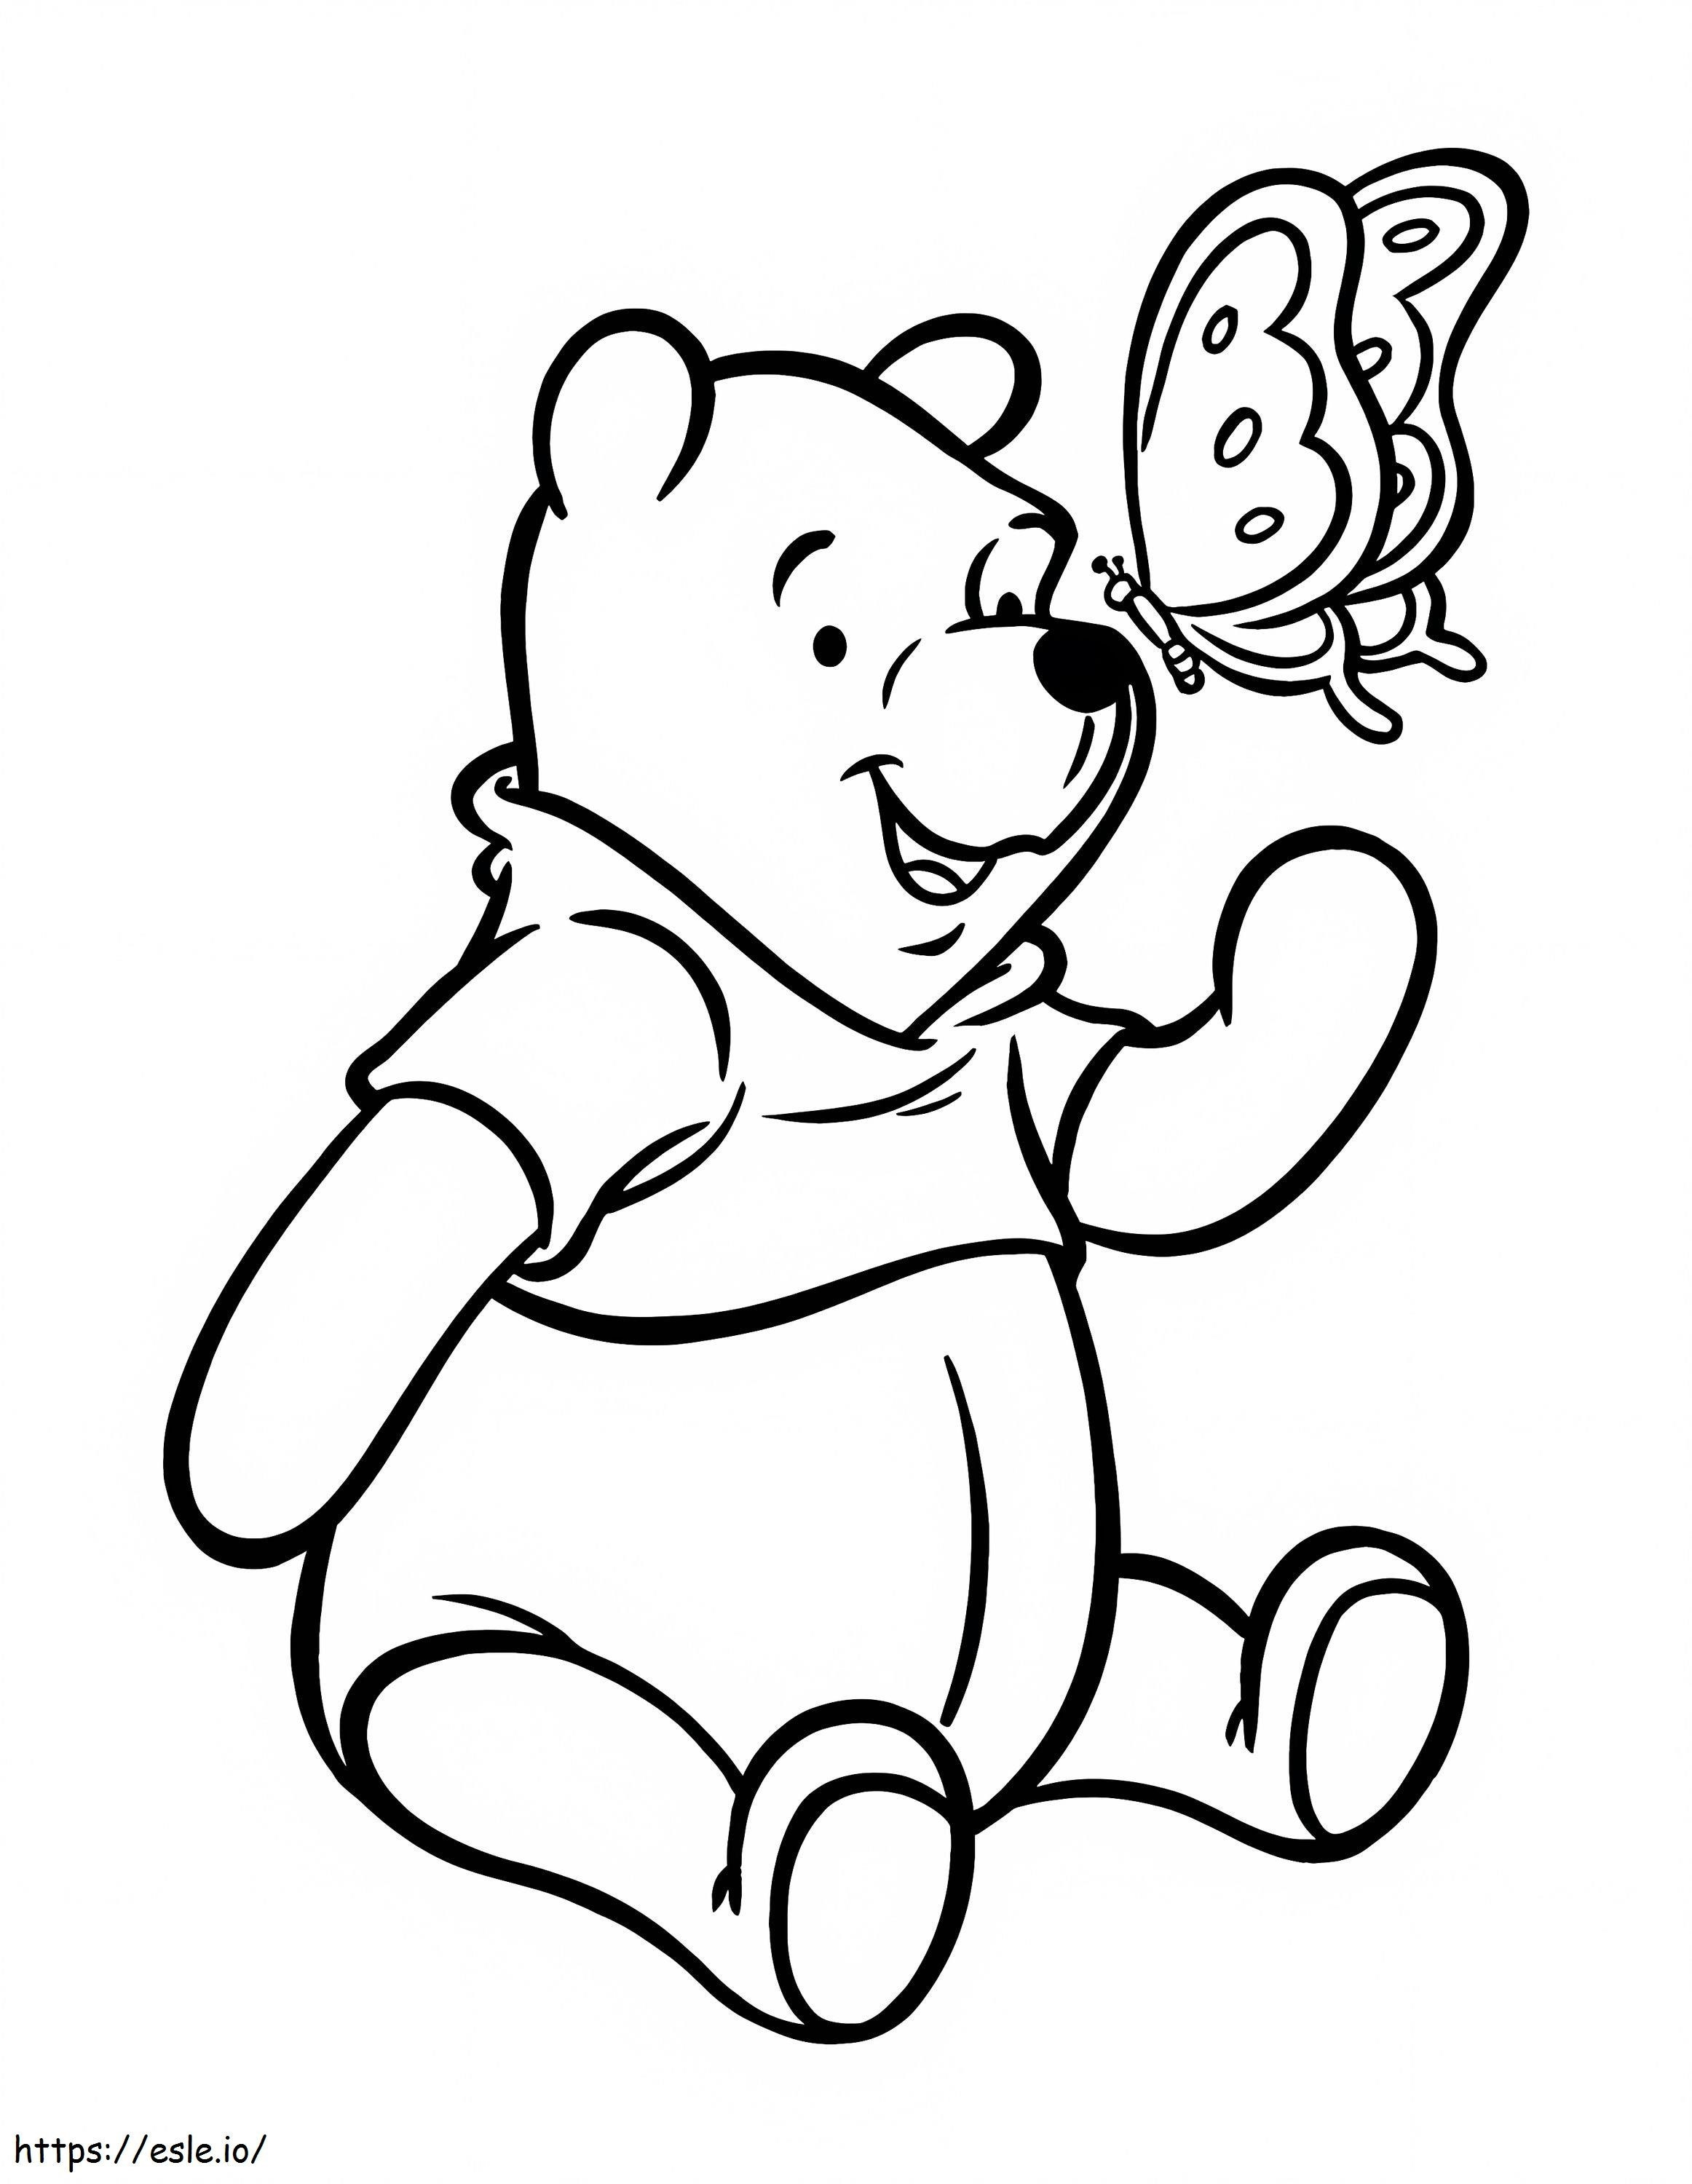 Winnie The Pooh Boyama Görüntüsü İlham Sayfaları Çocuklar İçin Fikirler Yazdırılabilir Ücretsiz Sözler 1024X1323 1 boyama